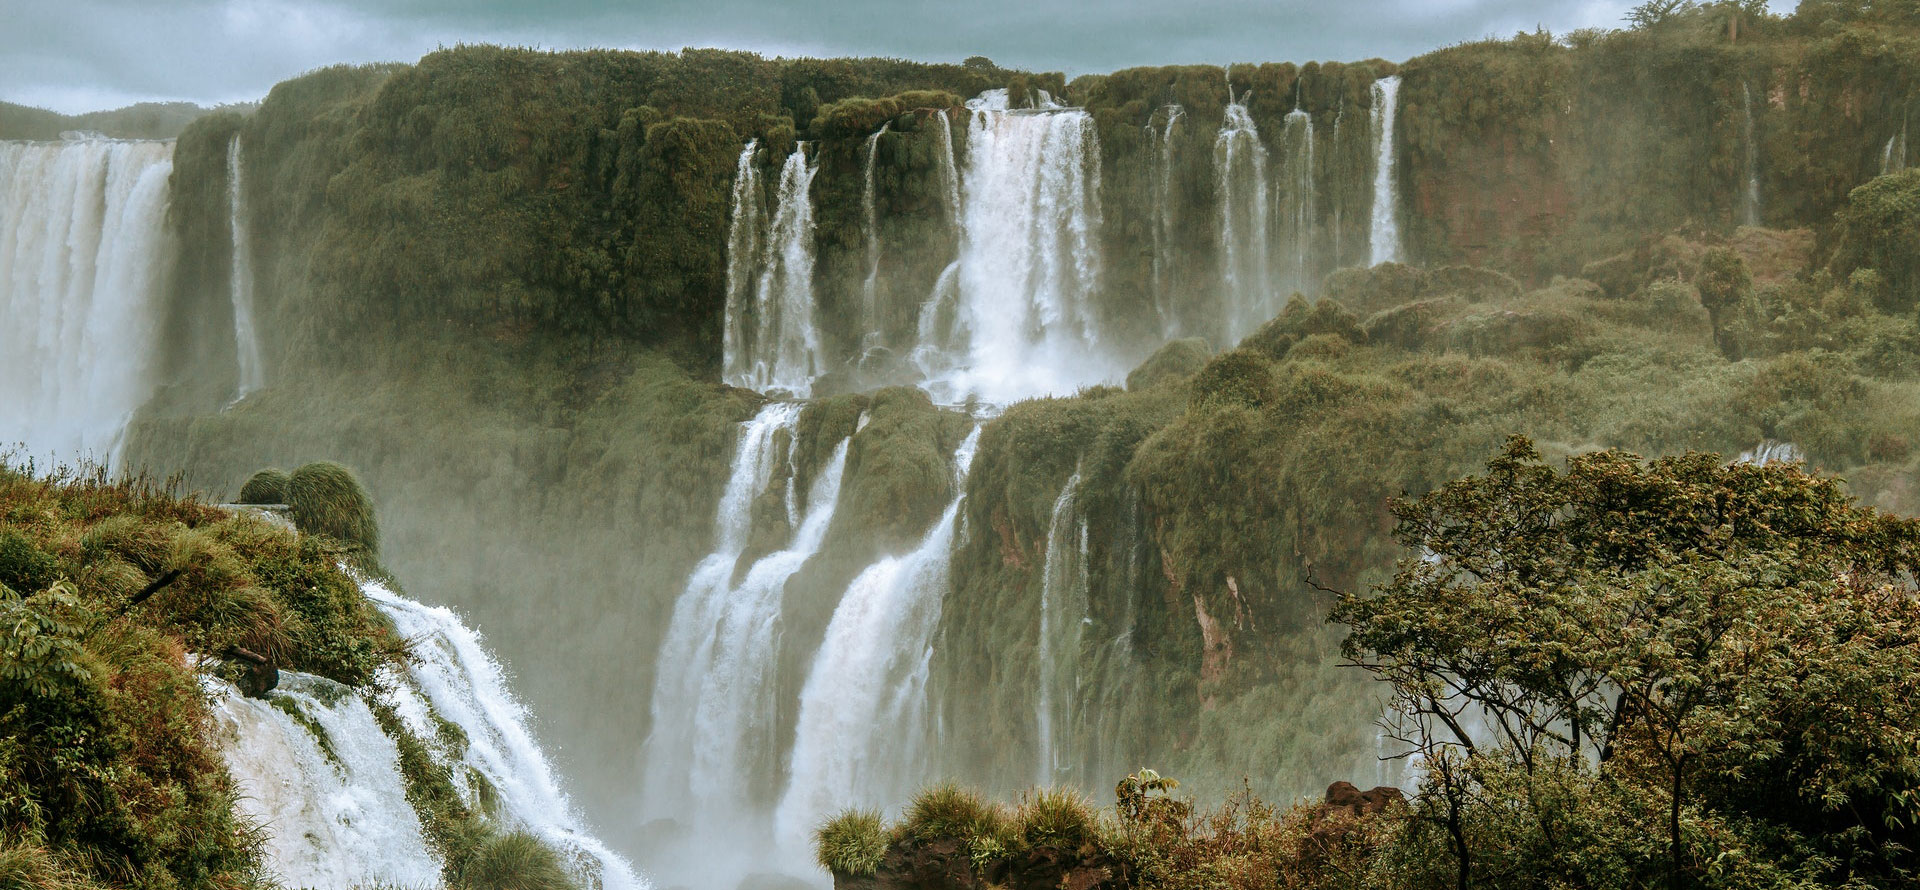 Iguazu falls in Brazil.